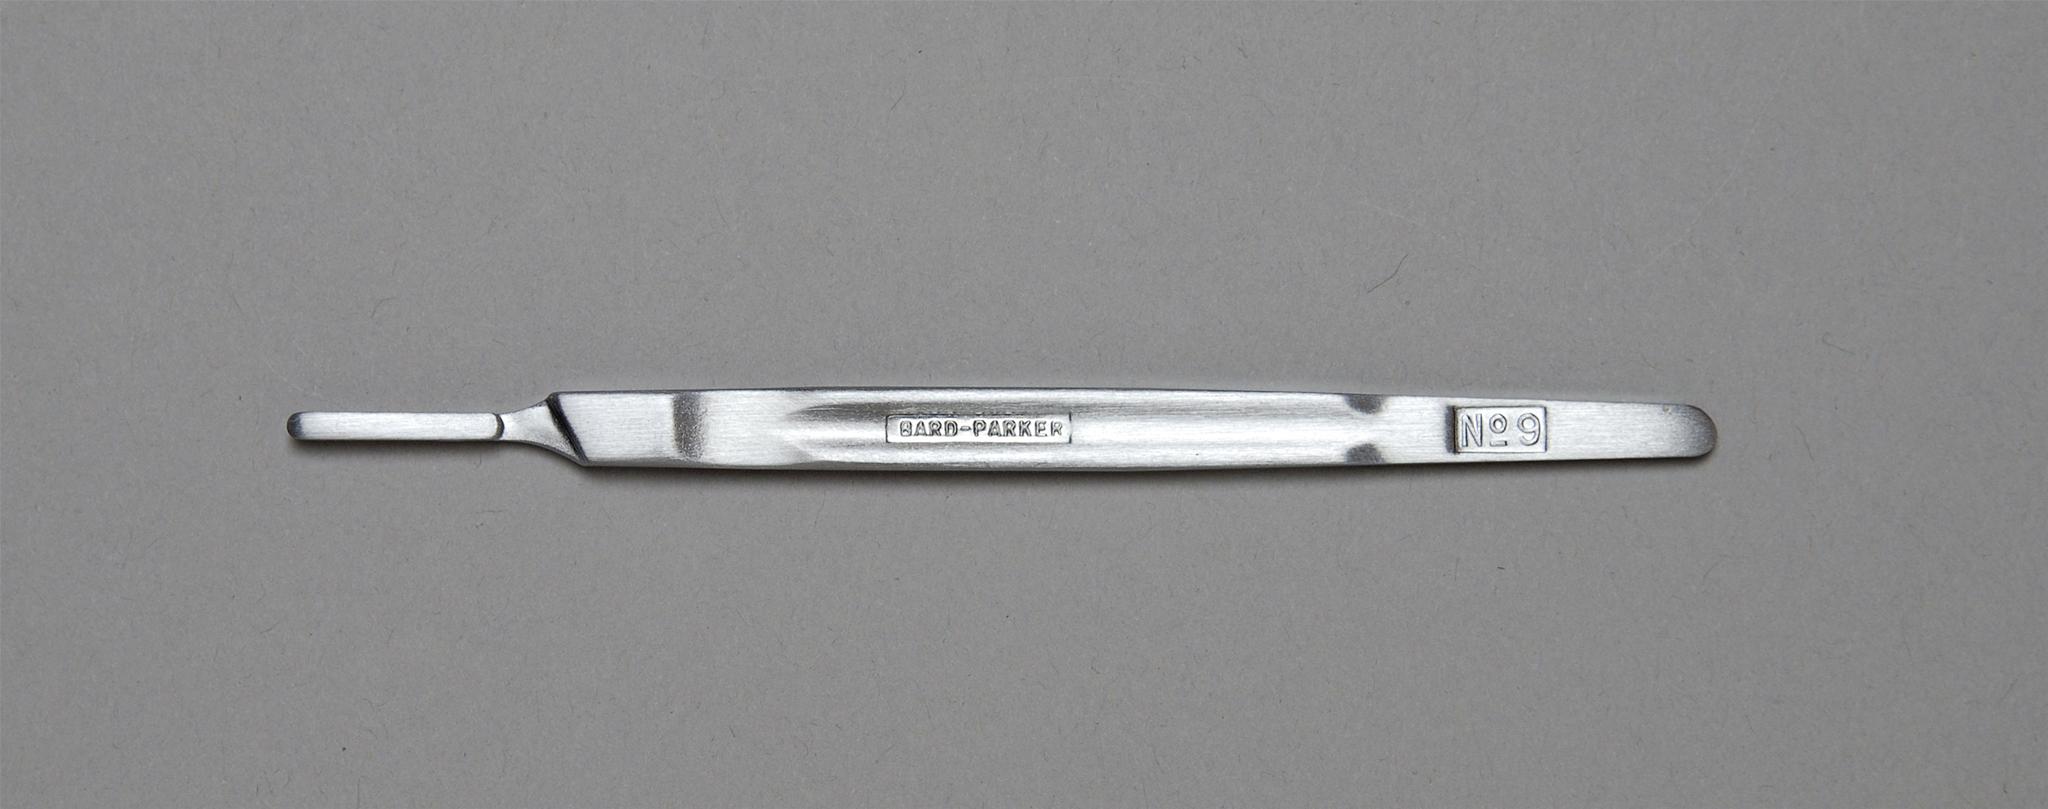 Aspen Bard-Parker Surgical Blade Handles Case 371090 By Aspen Sur